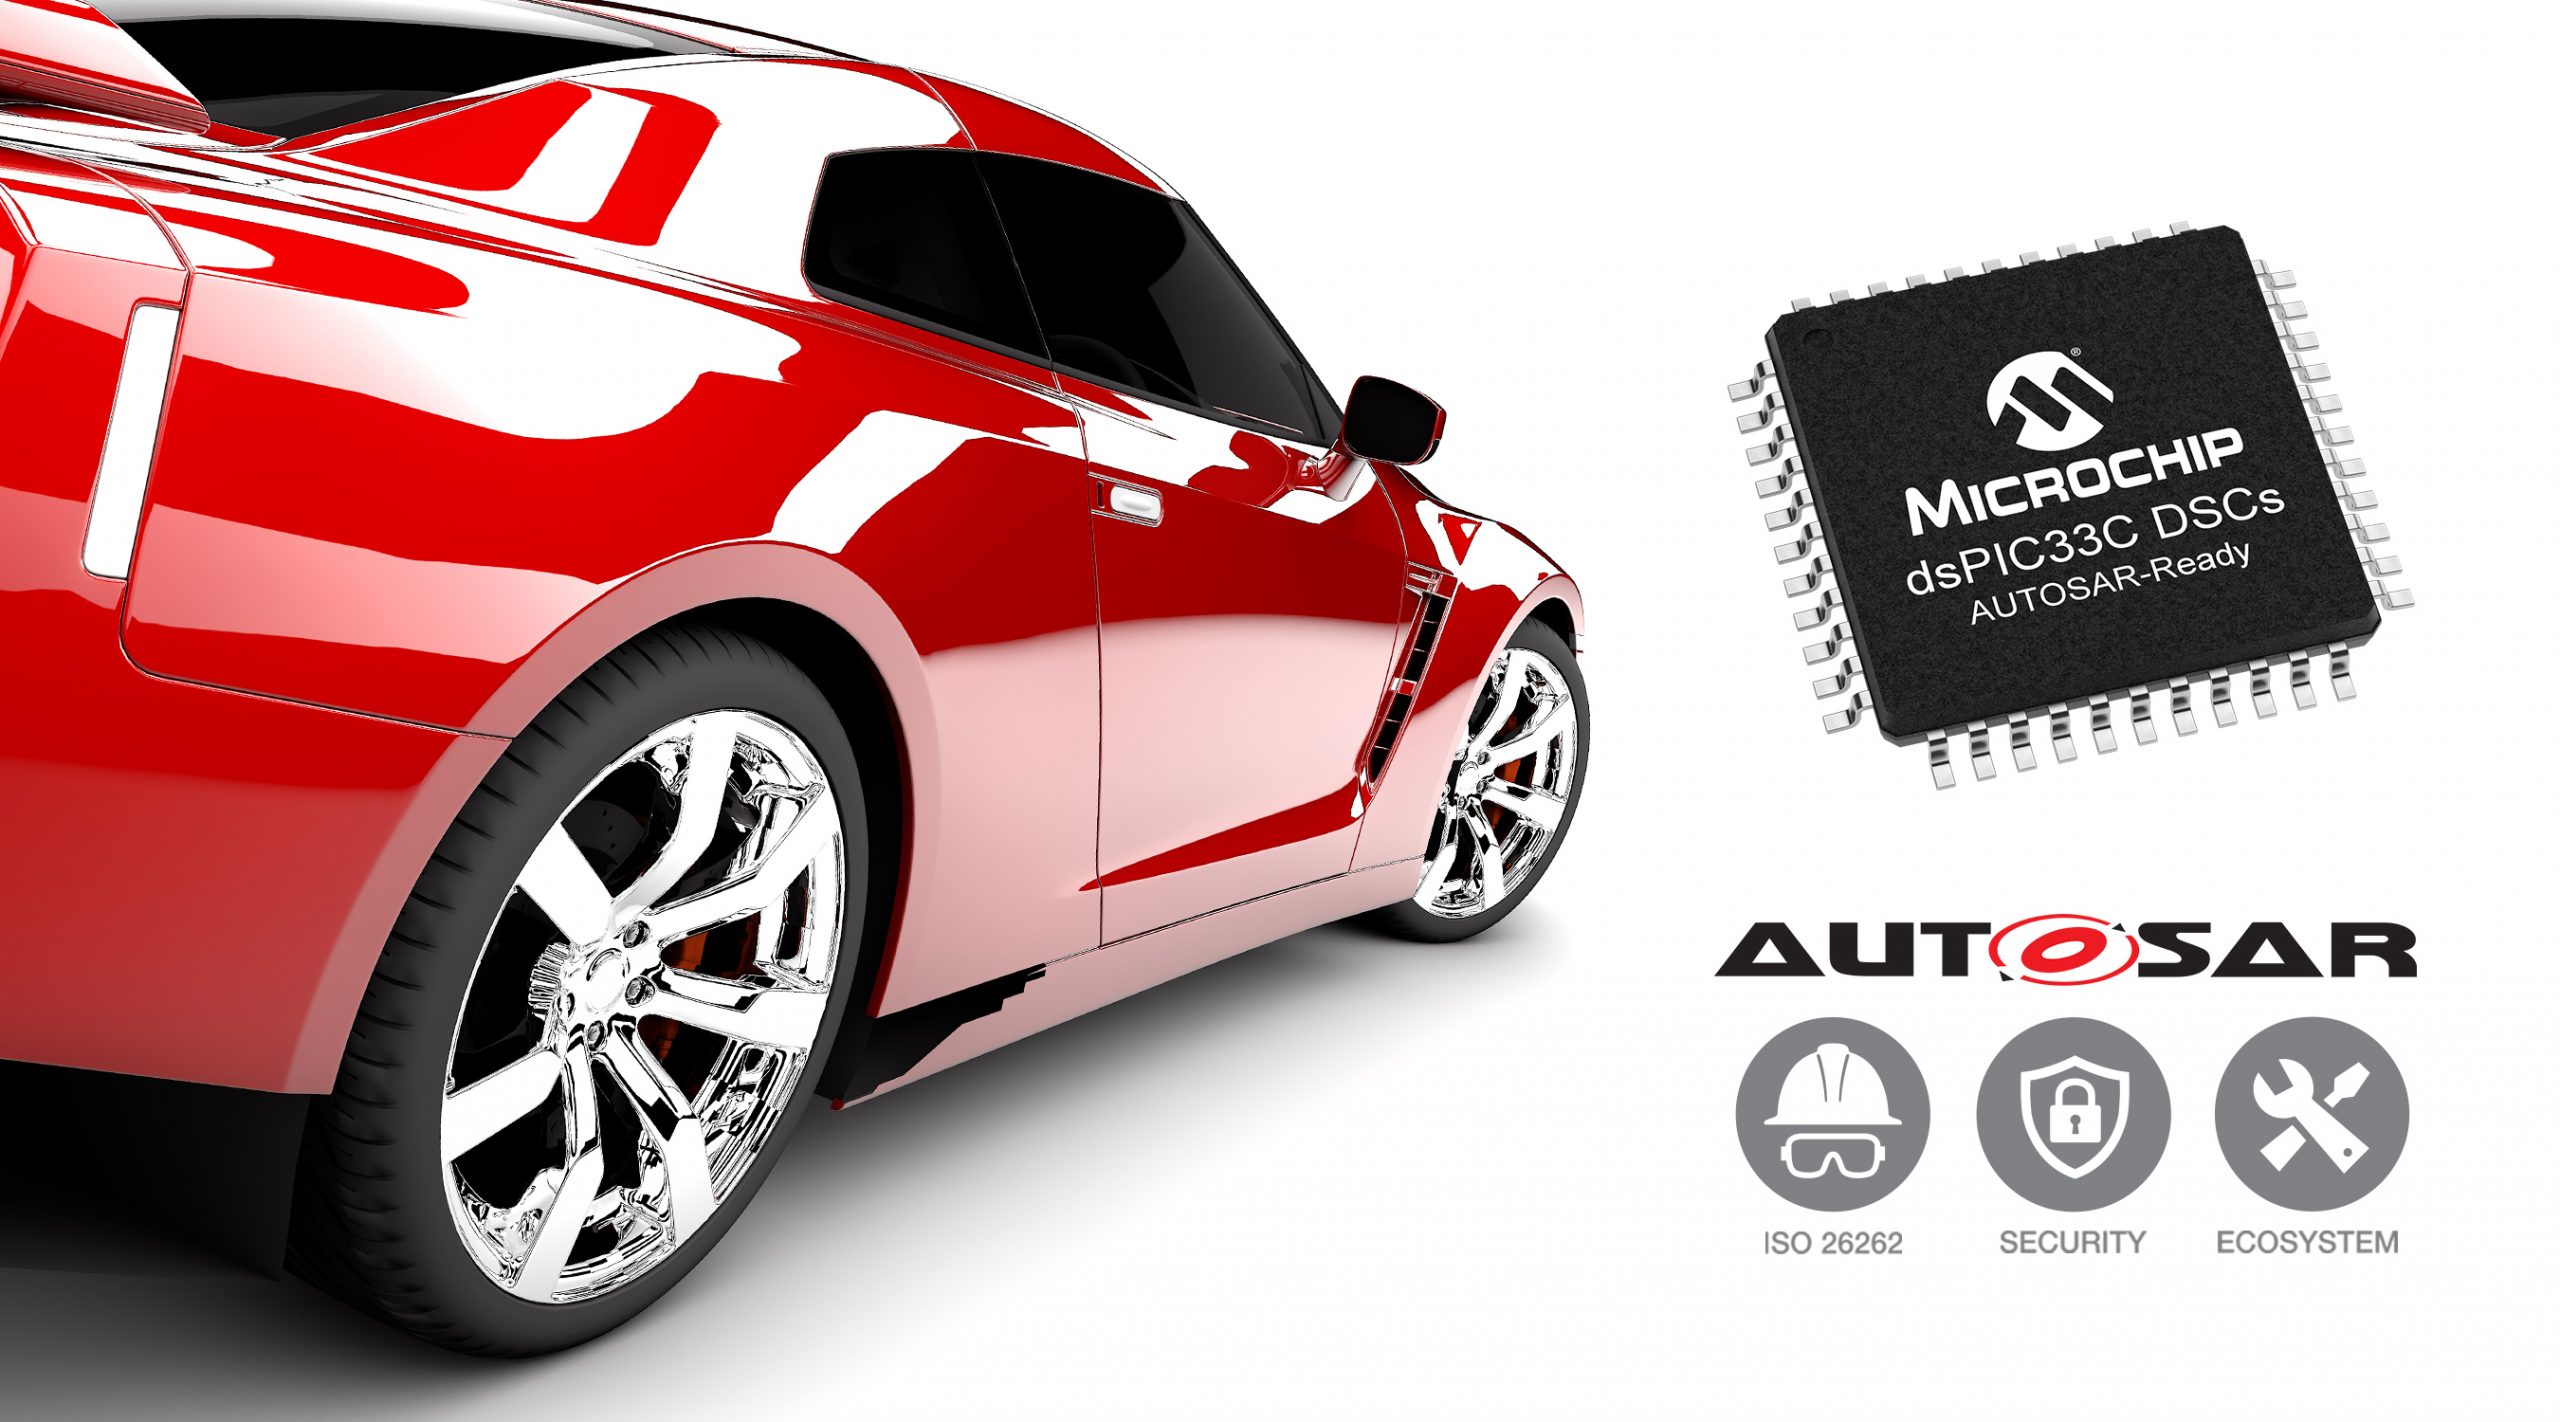 Microchip đơn giản hóa thiết kế ô tô bằng các sản phẩm và hệ sinh thái sẵn sàng cho AUTOSAR tuân thủ tiêu chuẩn ISO 26262